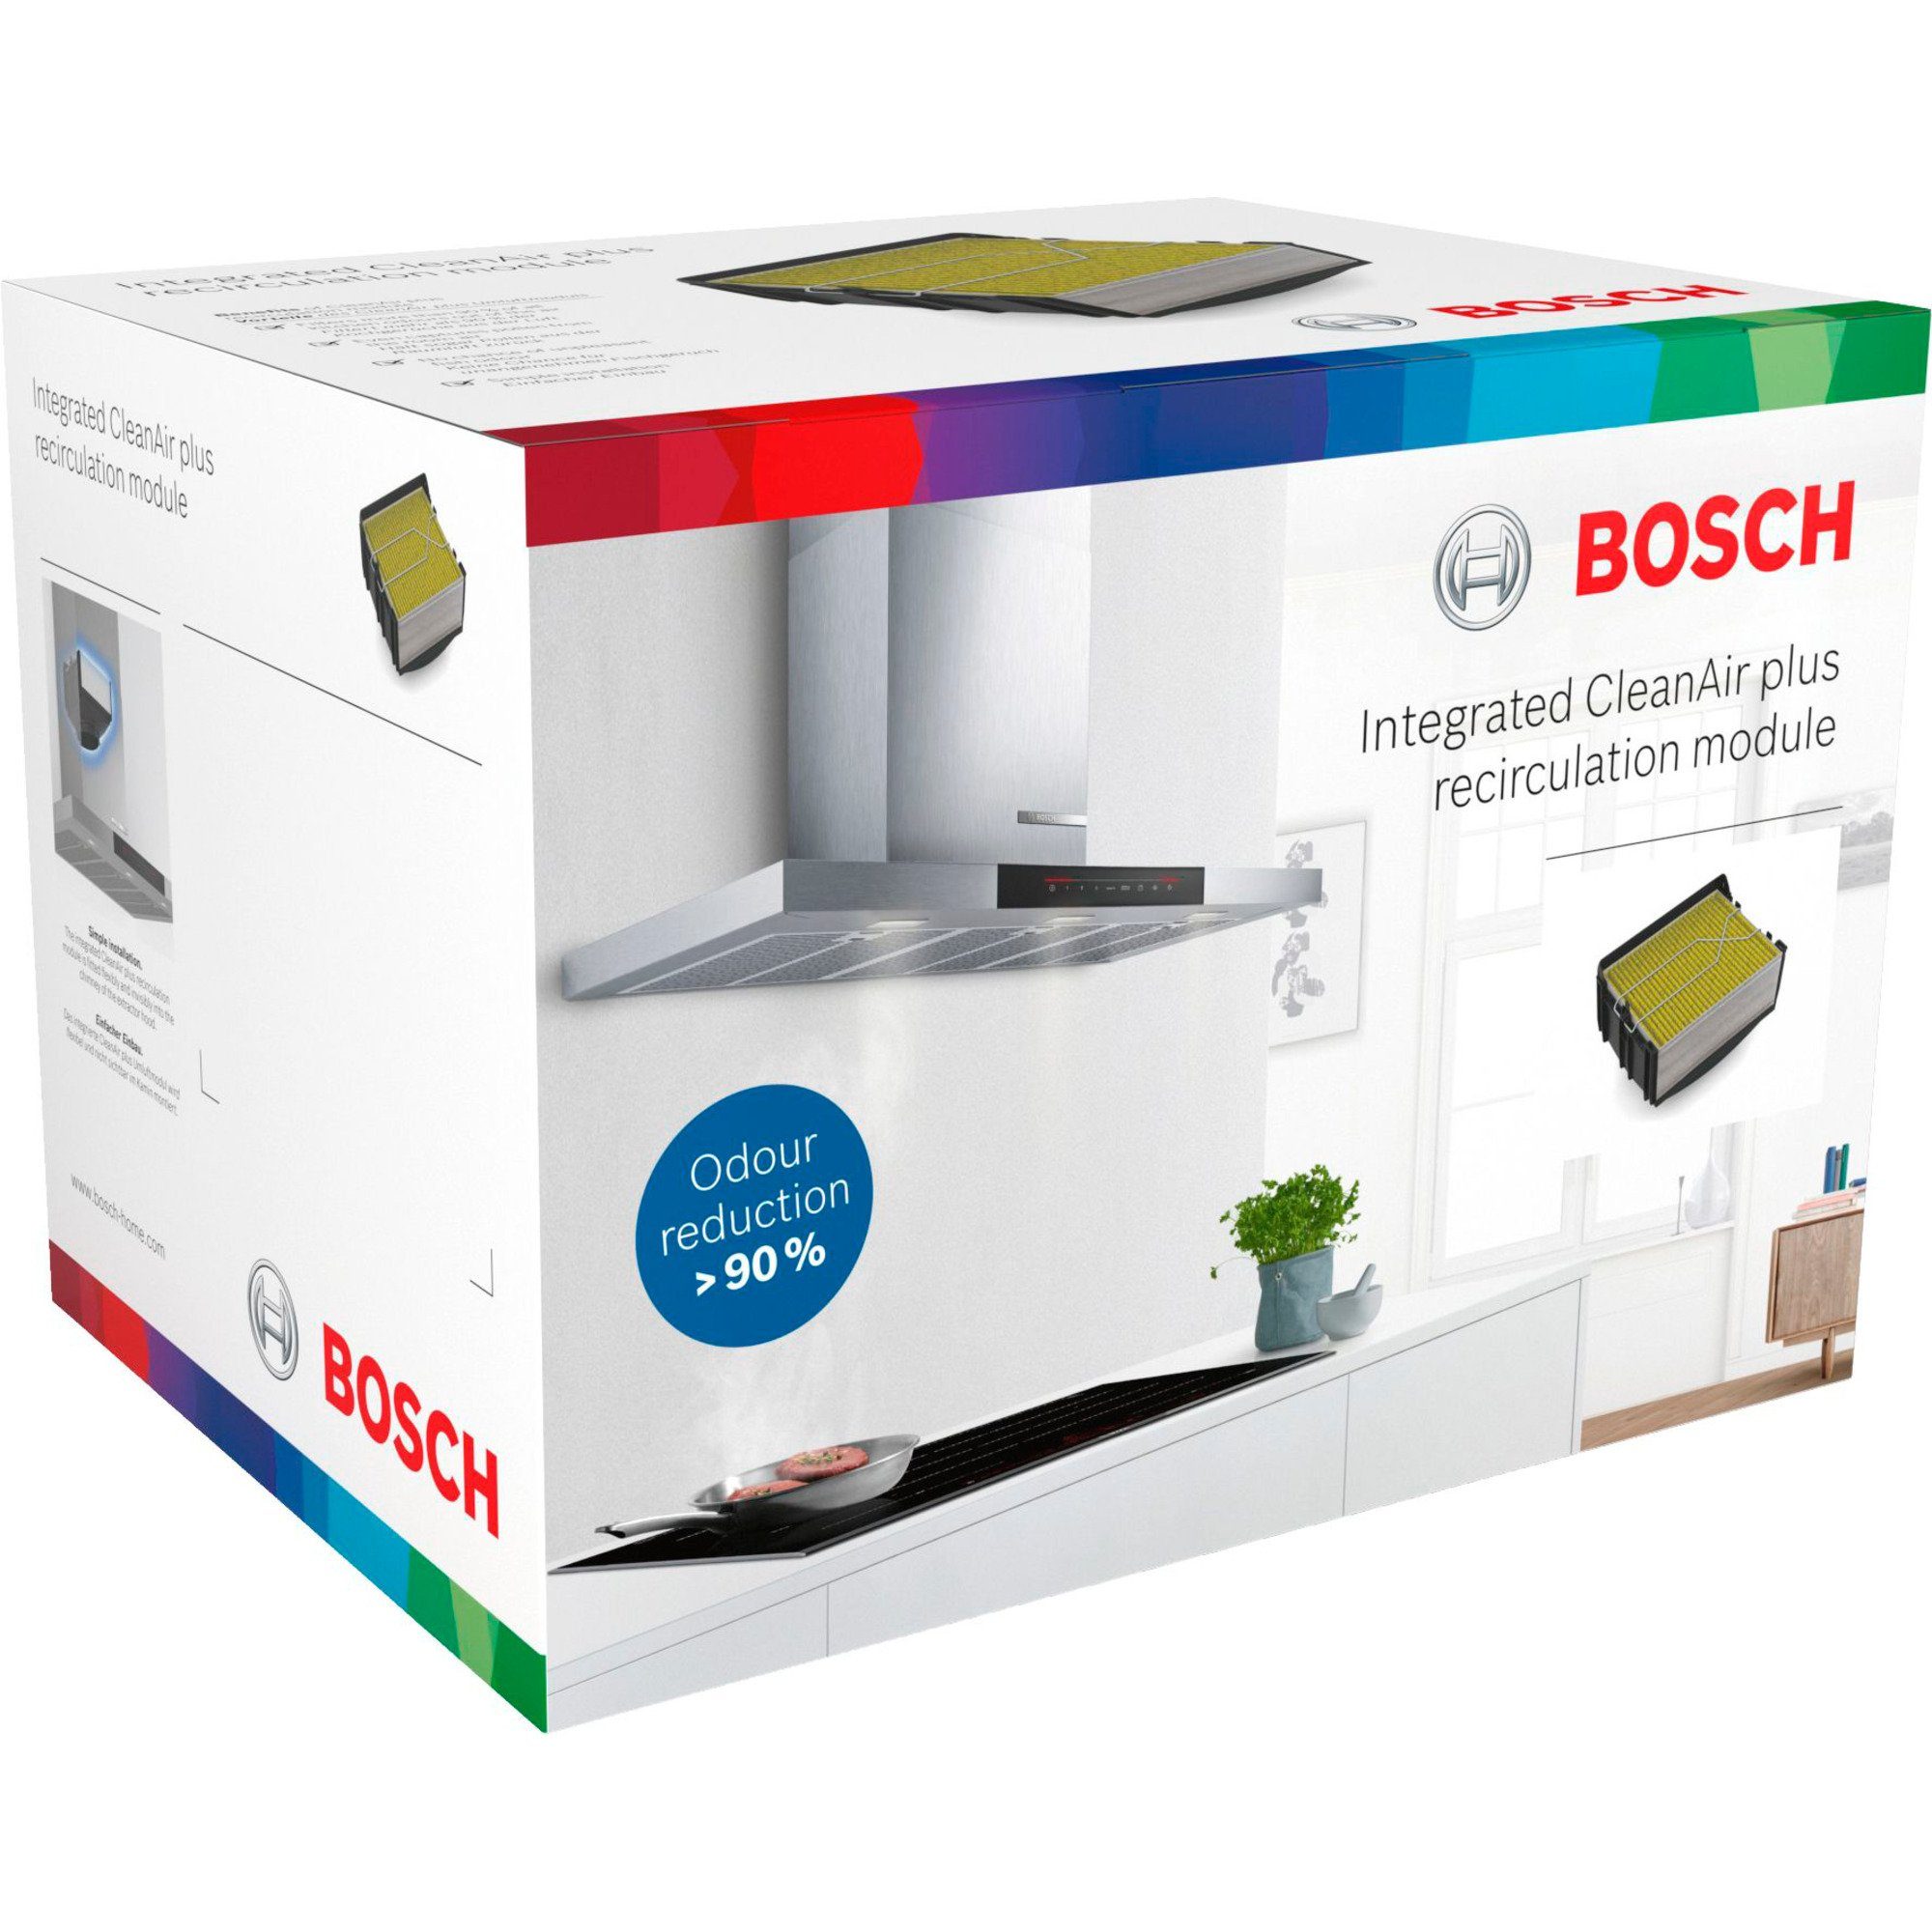 BOSCH Montagezubehör Backofen Bosch CleanAirPlus Home Umluftmodul Integriertes